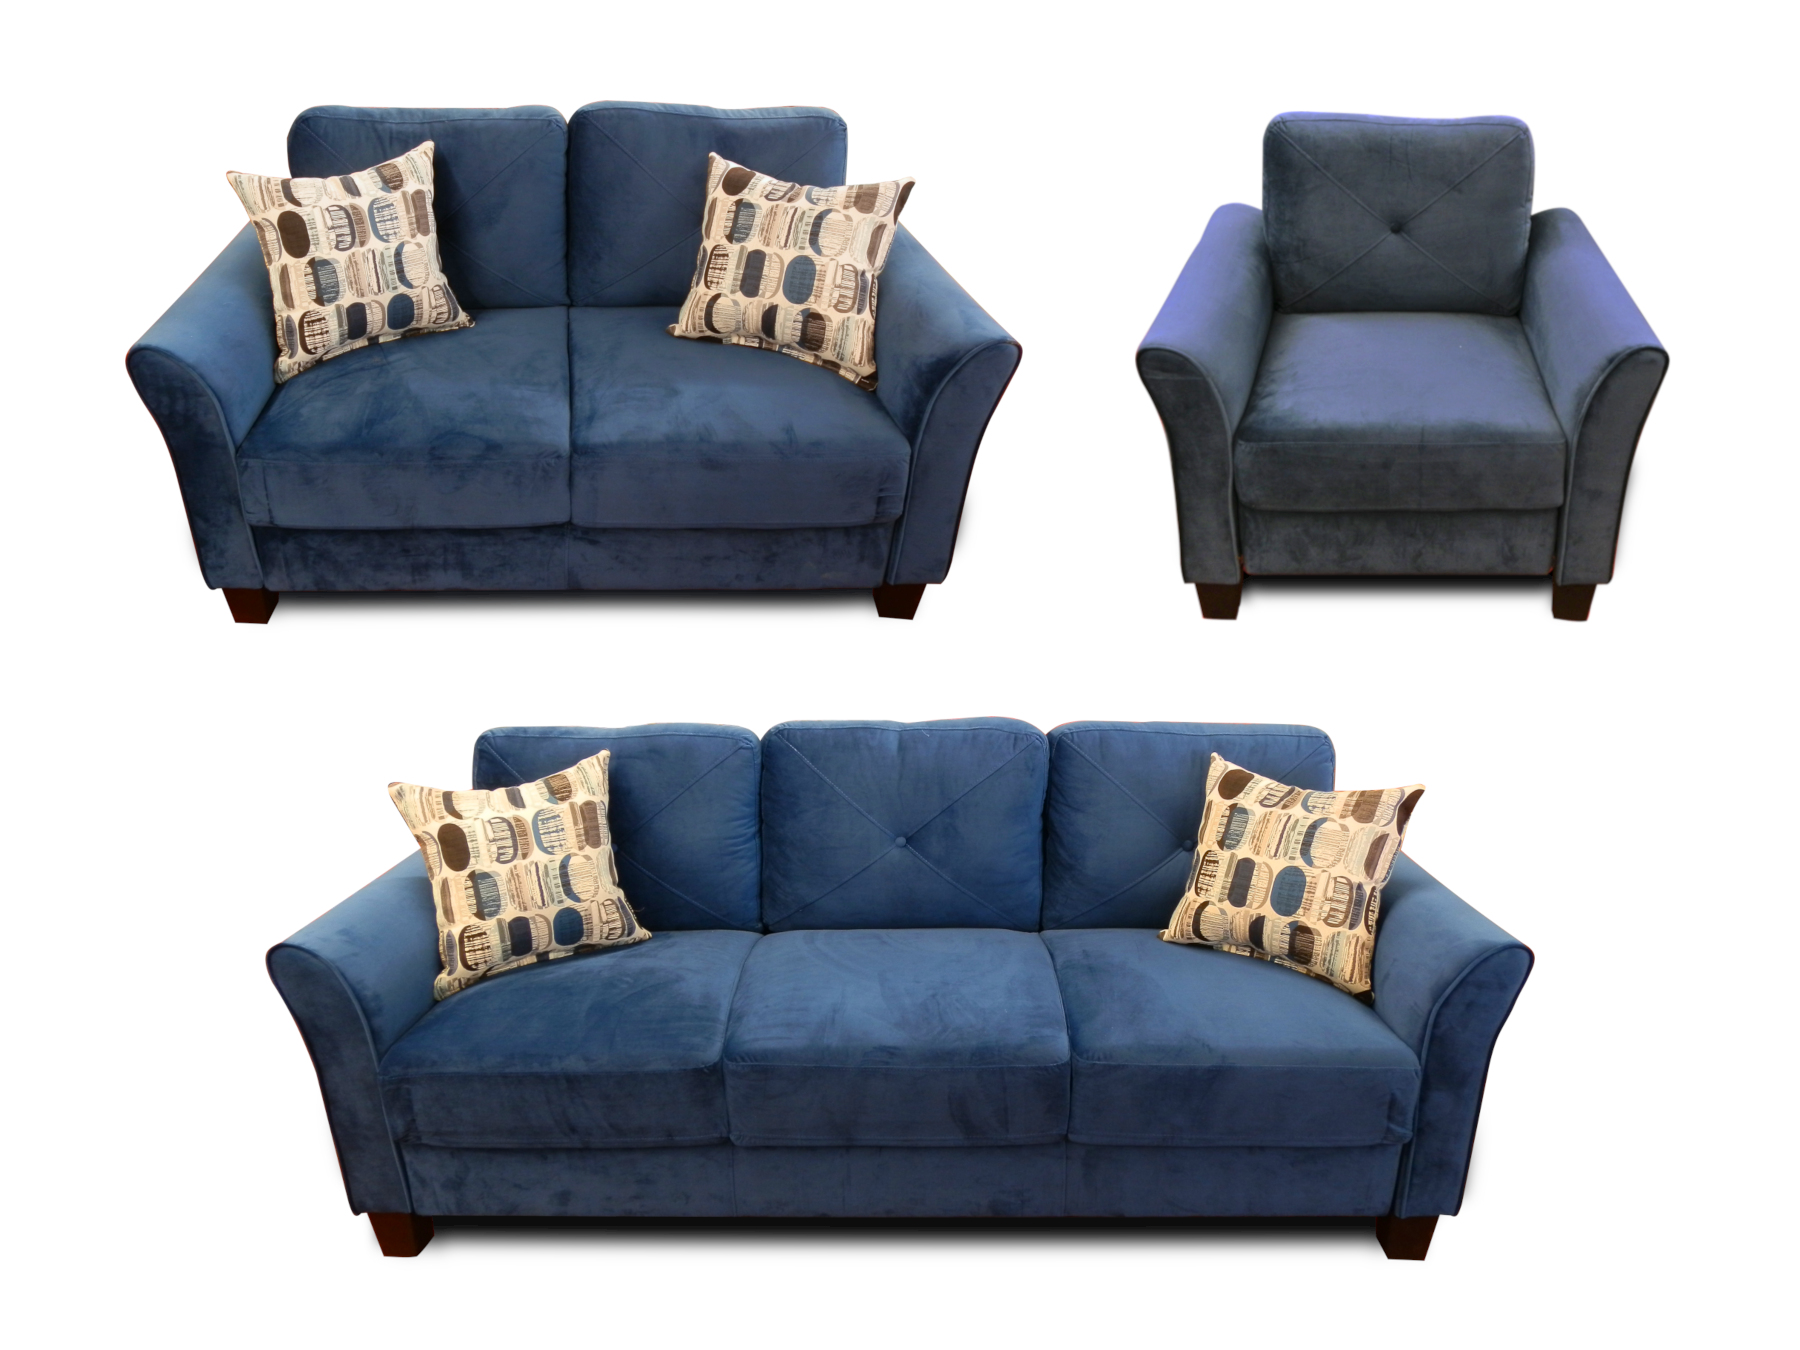 25163 - sofa - set - PR-EDWINA - composite - pillows